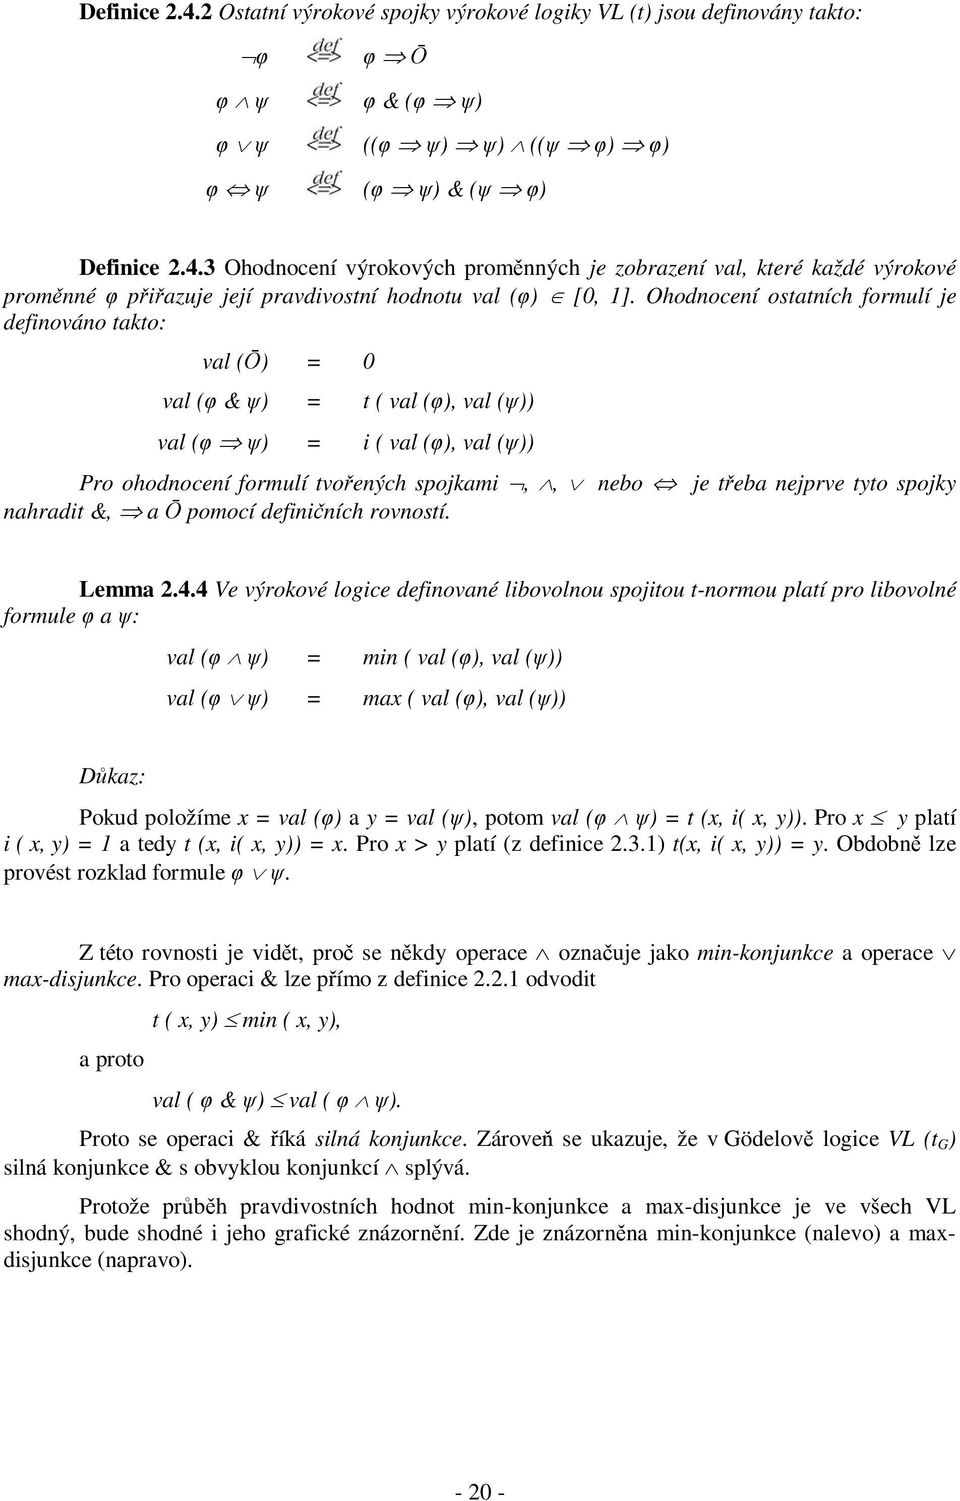 tyto spojky nahradit &, a Ō pomocí definičních rovností. Lemma 2.4.